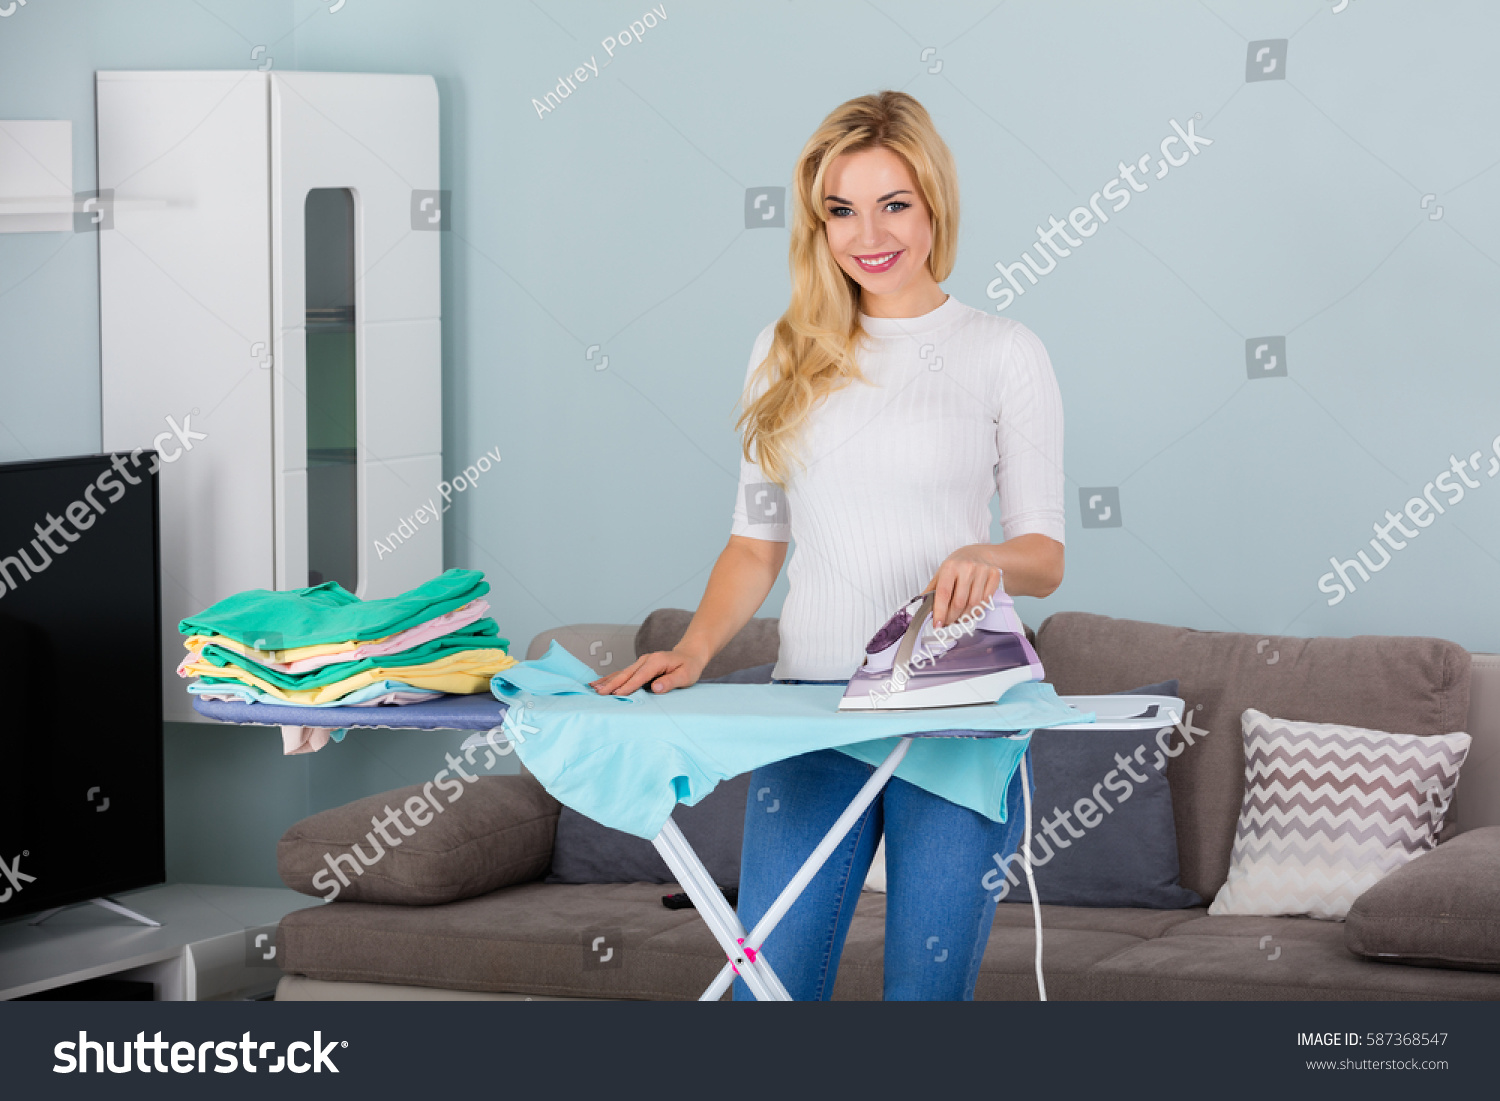 Сочная обнаженка домохозяйки у гладильной доски